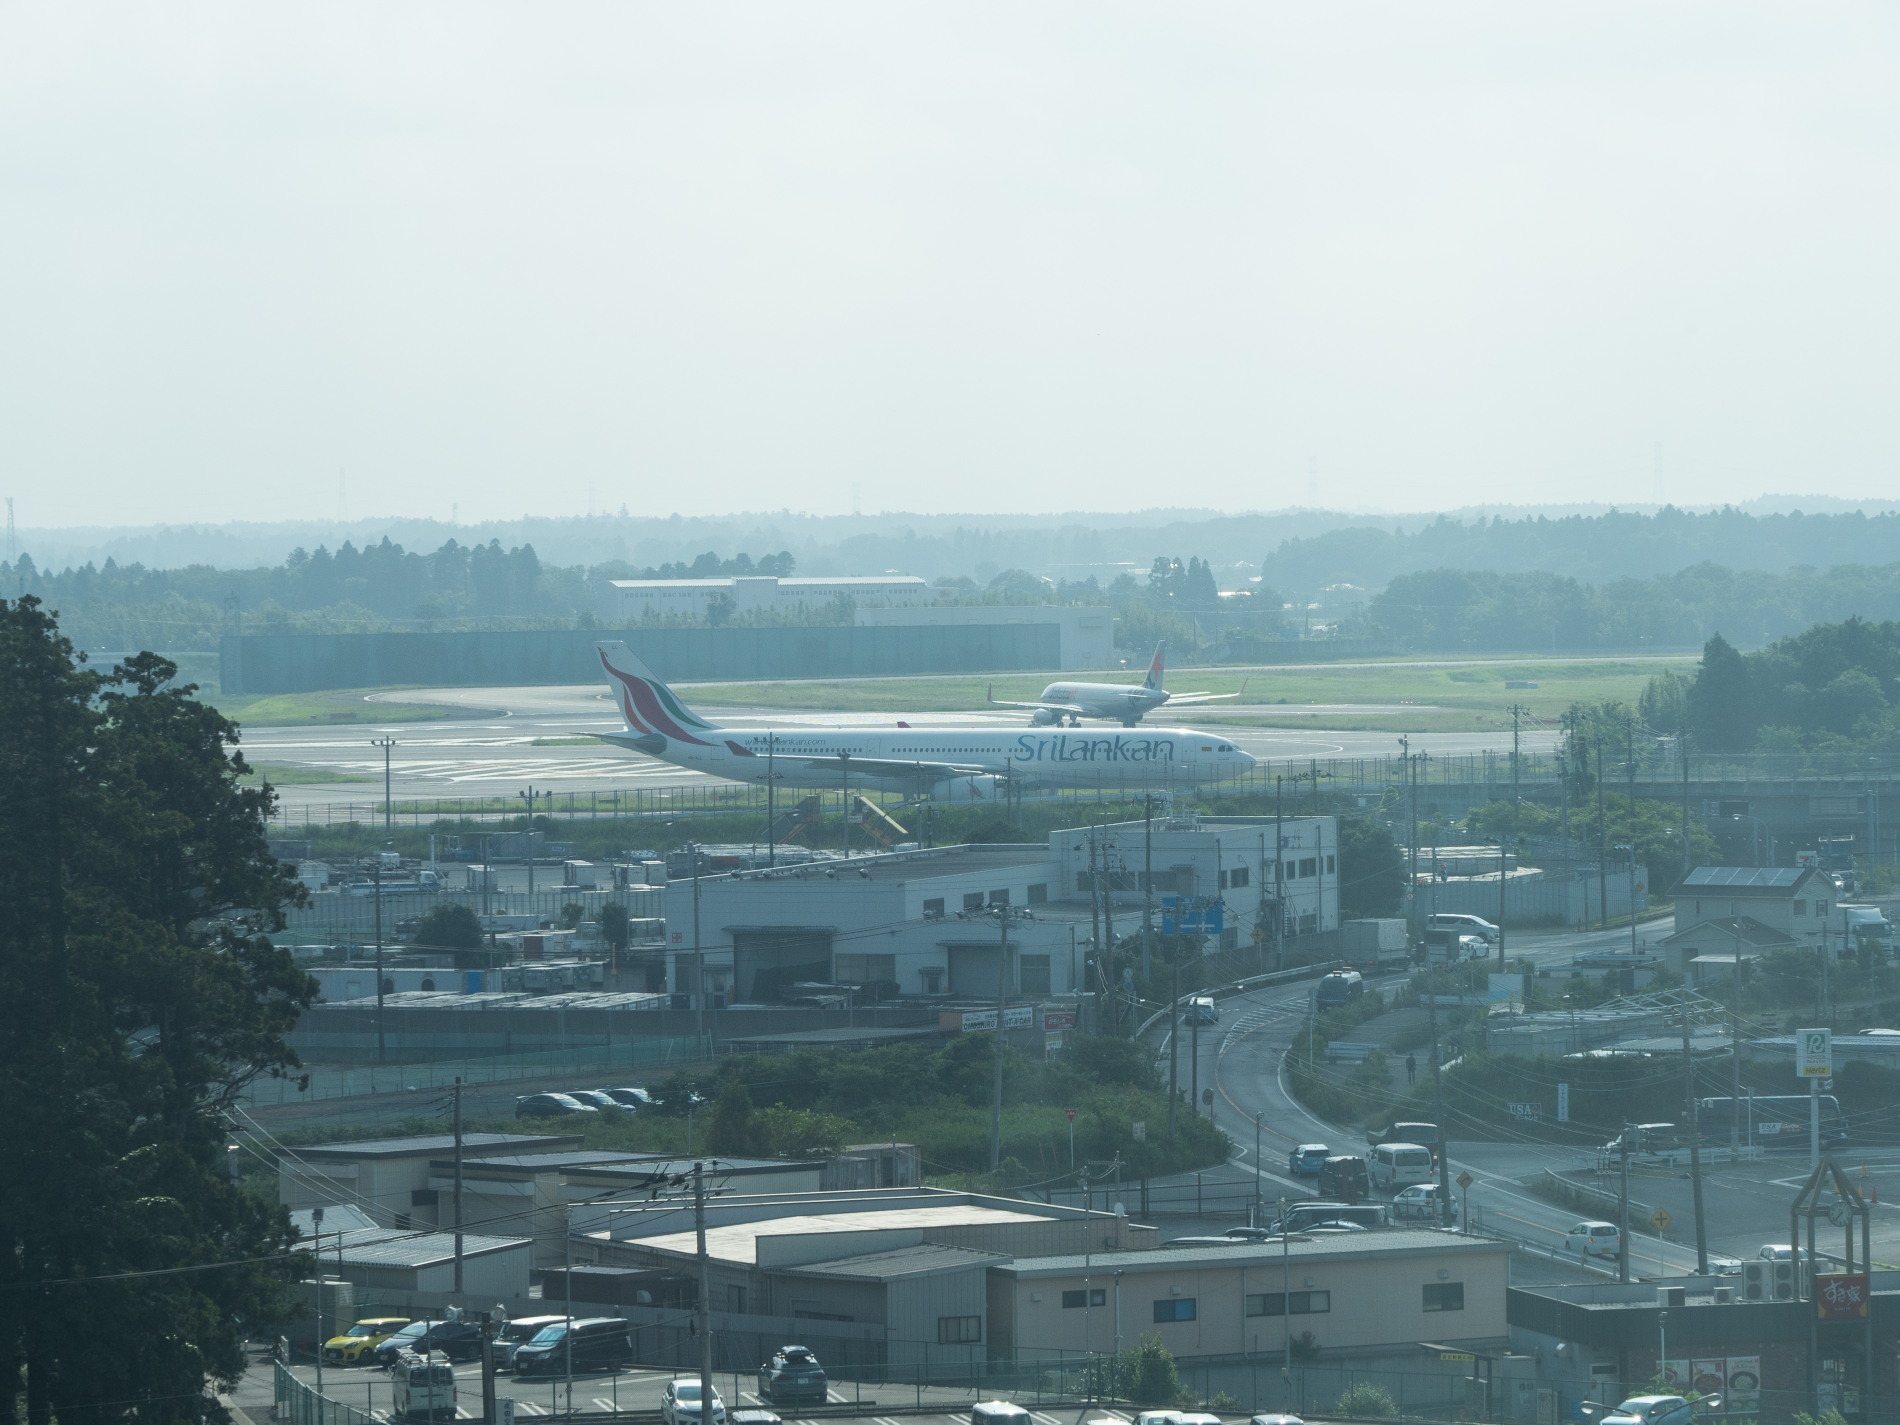 6月某日、ジェットスターで成田空港と航空機を見学(1)_f0276498_13254926.jpg